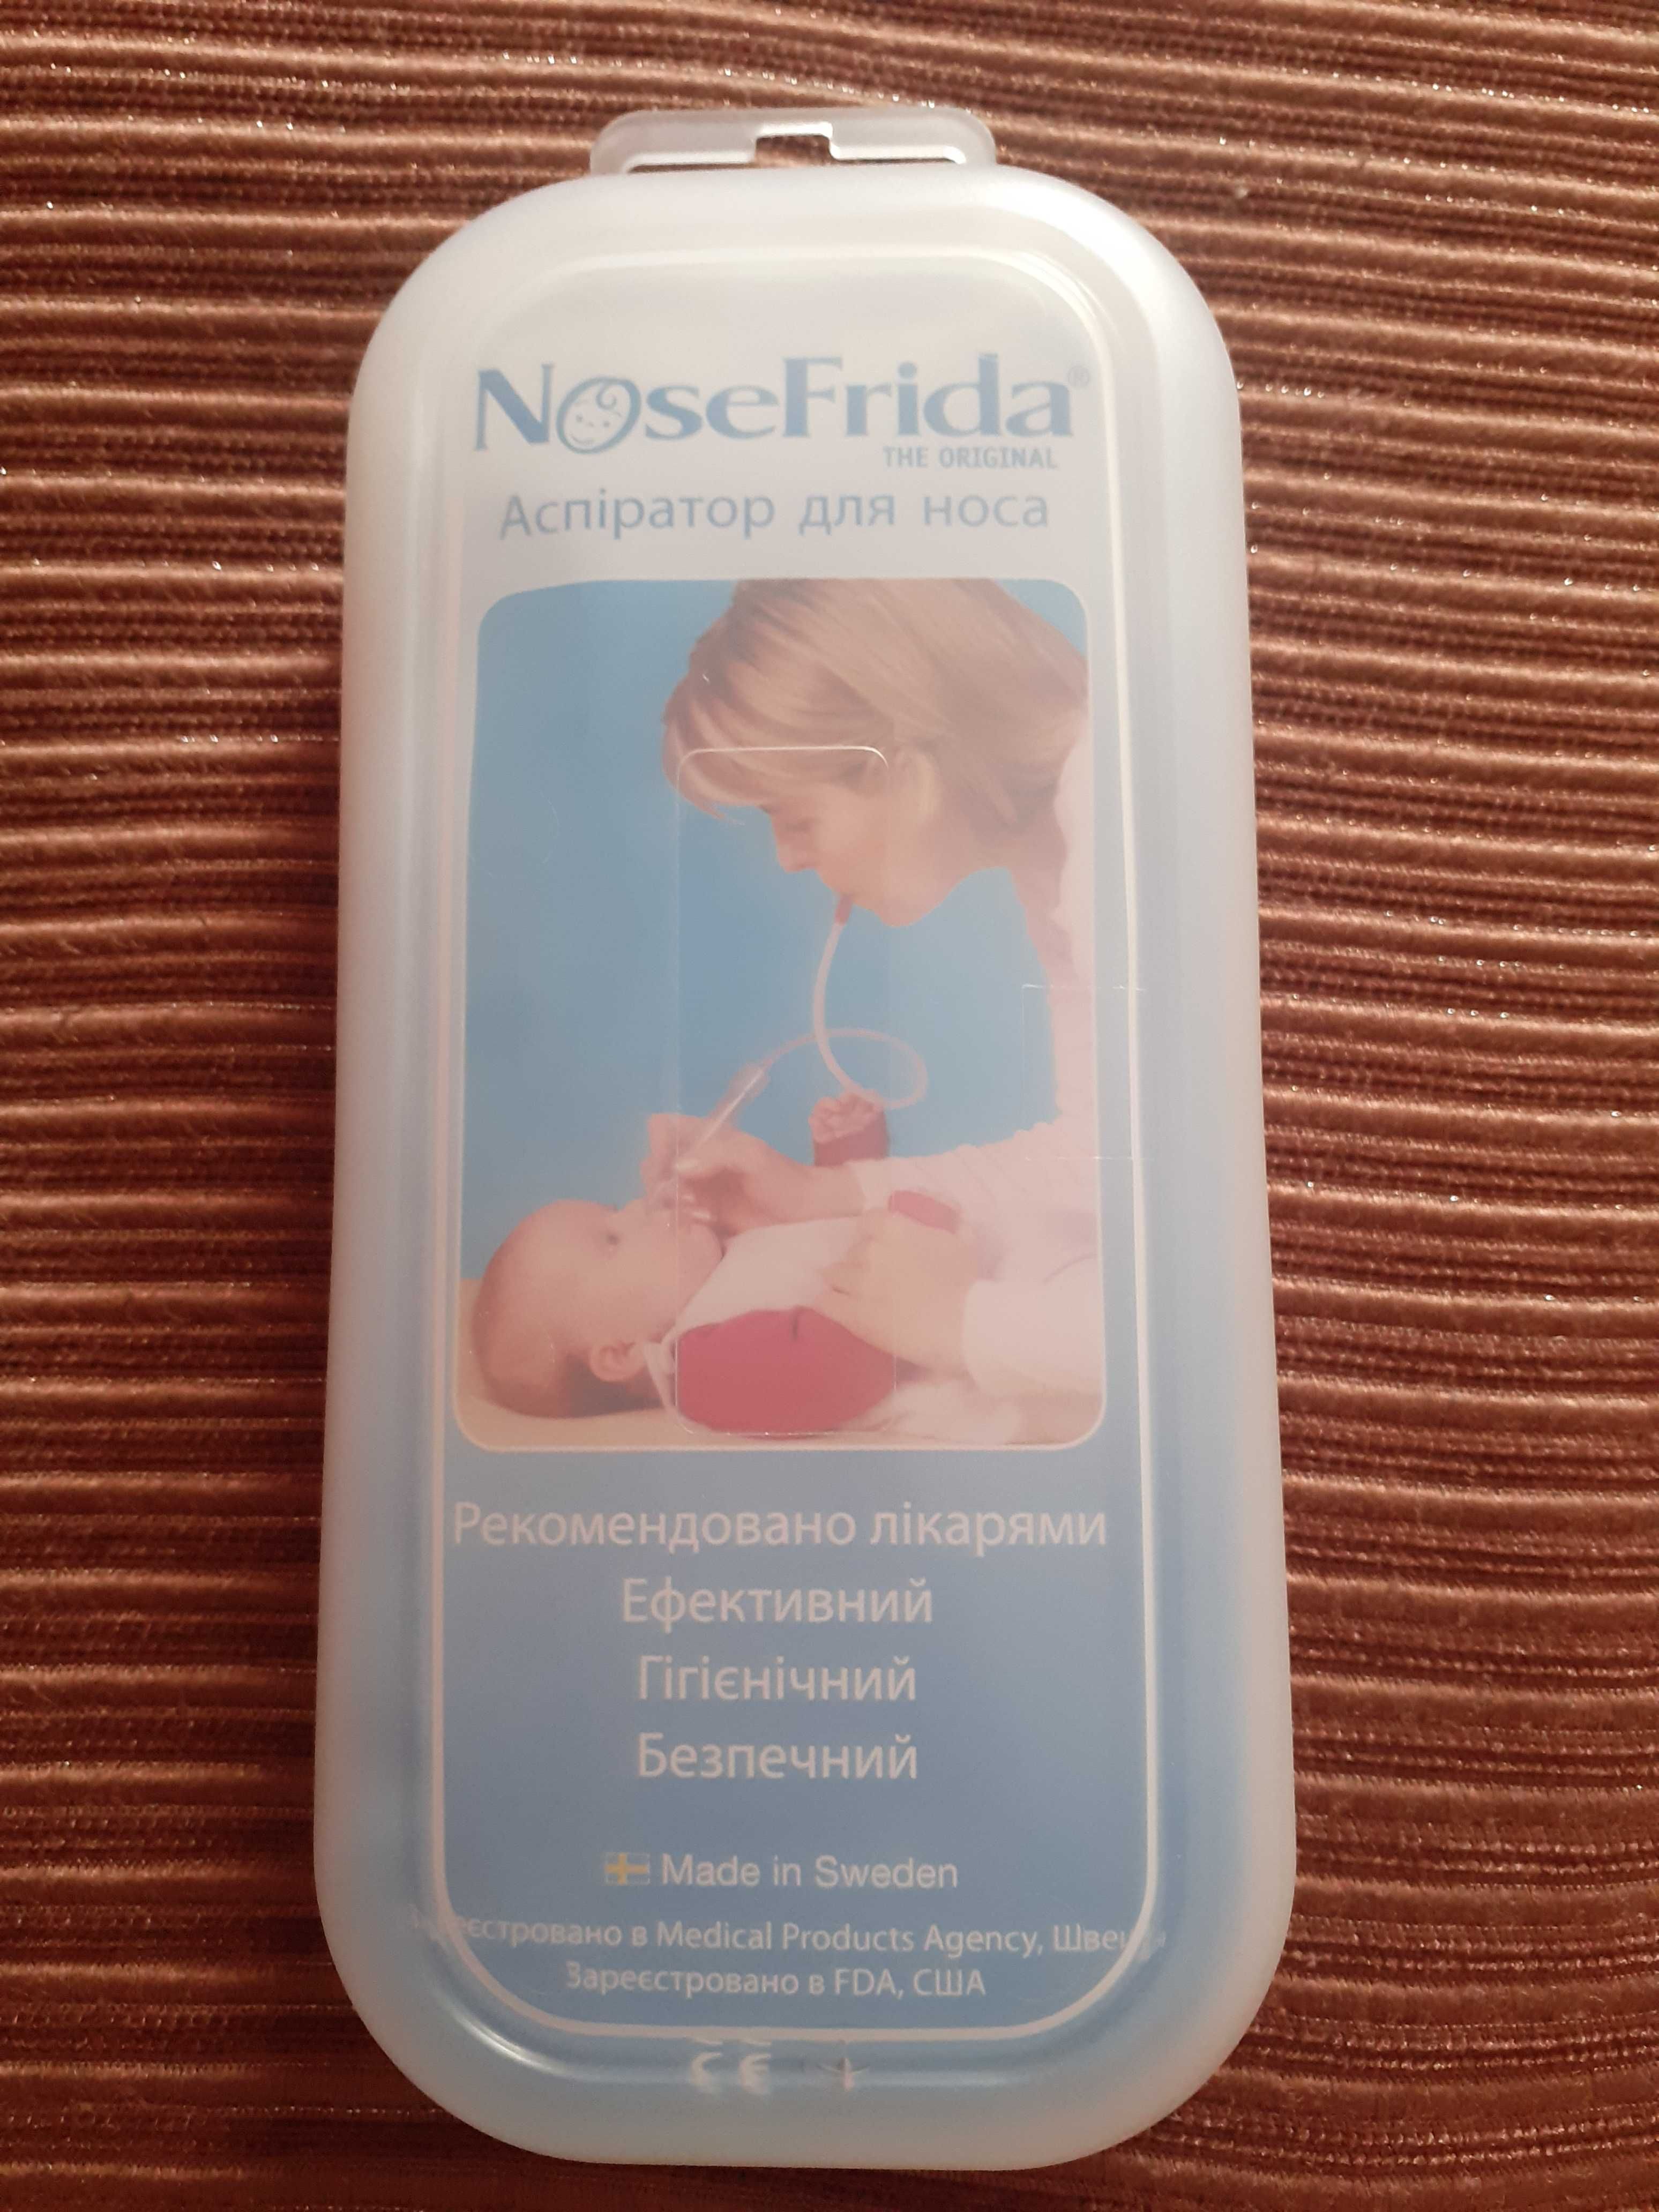 Аспиратор для носа NoseFrida, Швеция.